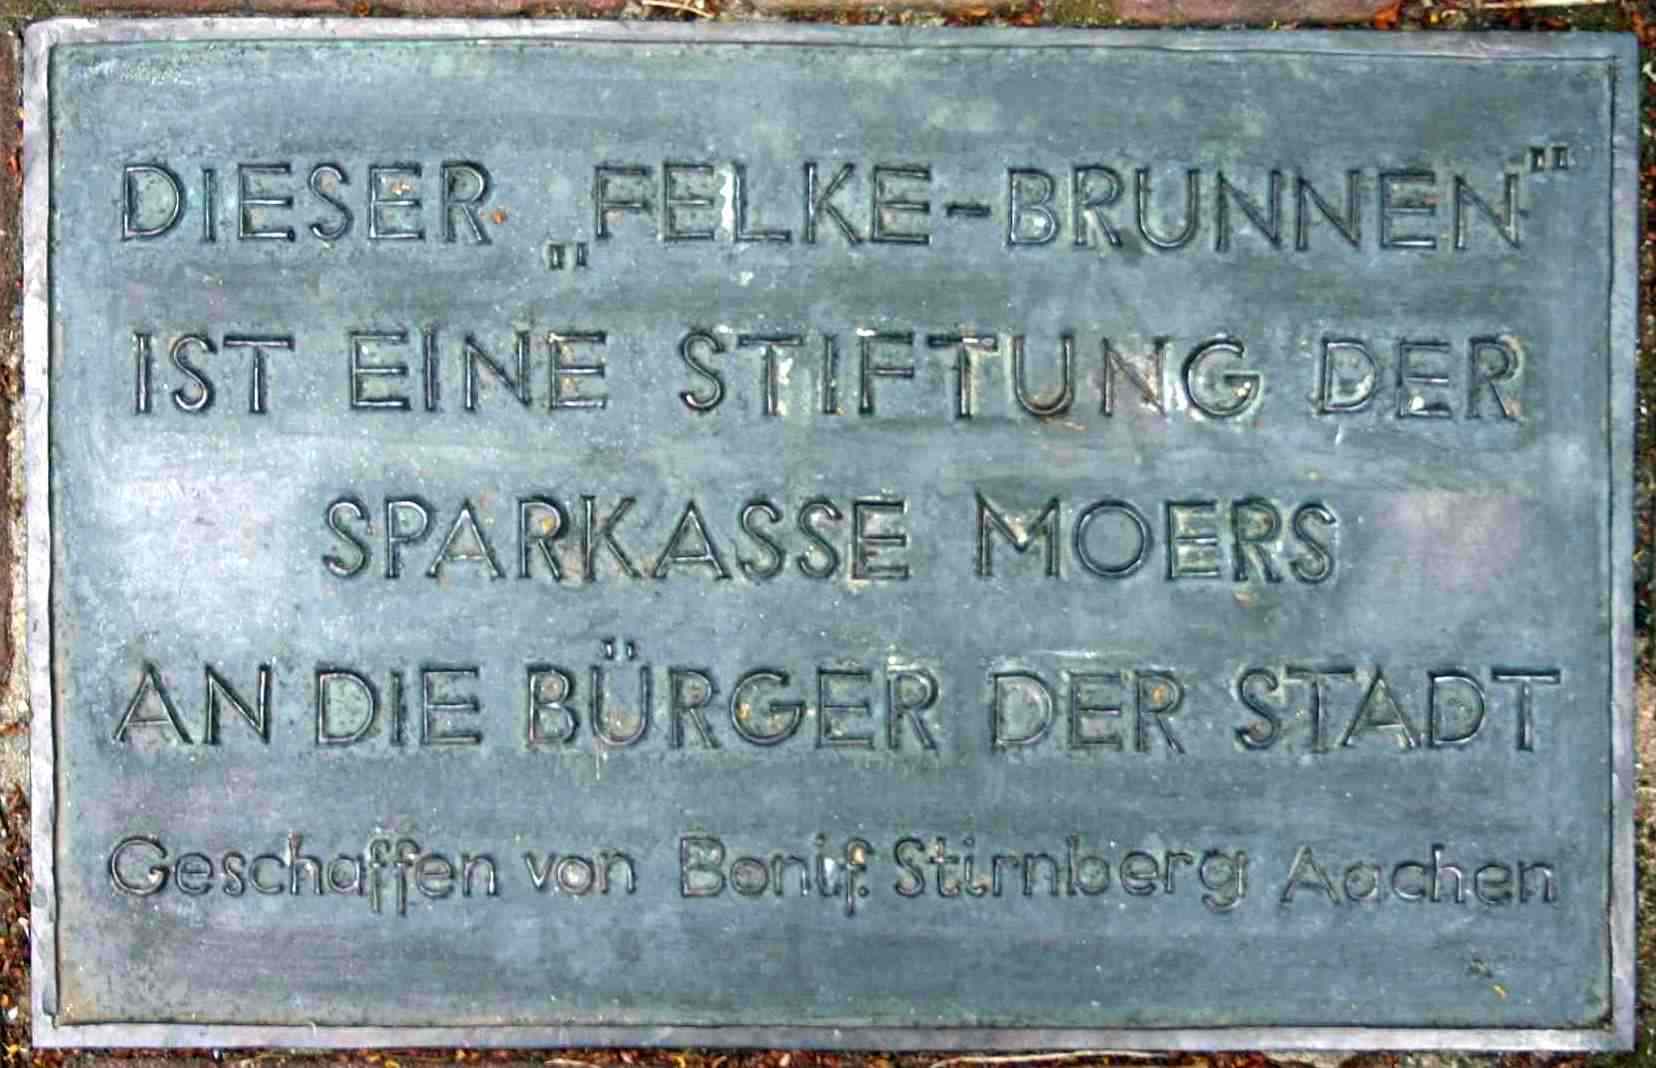 Repelen - Felke-Brunnen - Bonifatius Stirnberg